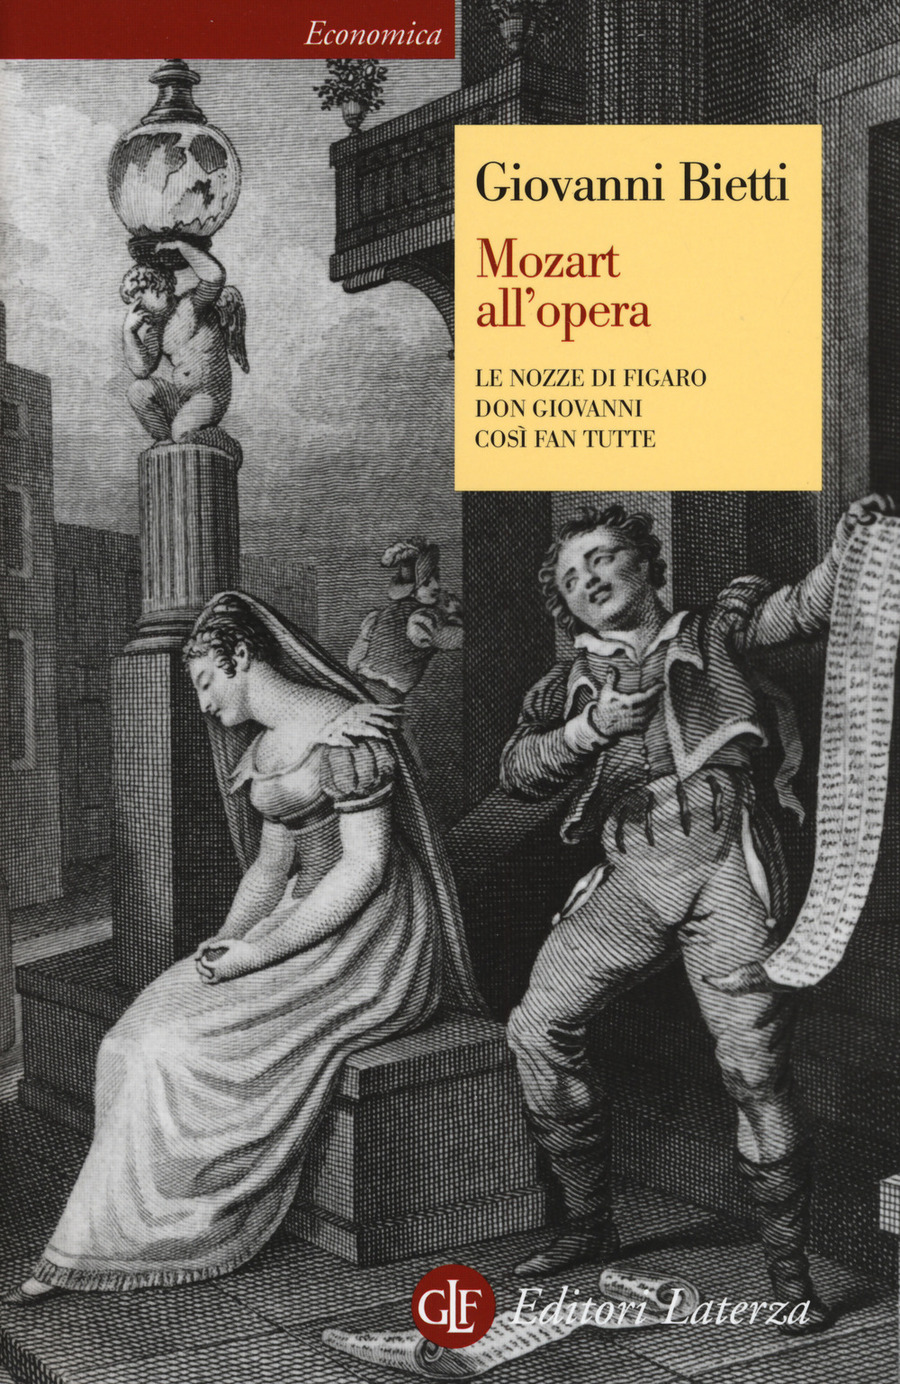 Giochiamo con i fratelli Mozart”: un libro per avvicinare i bambini  all'opera